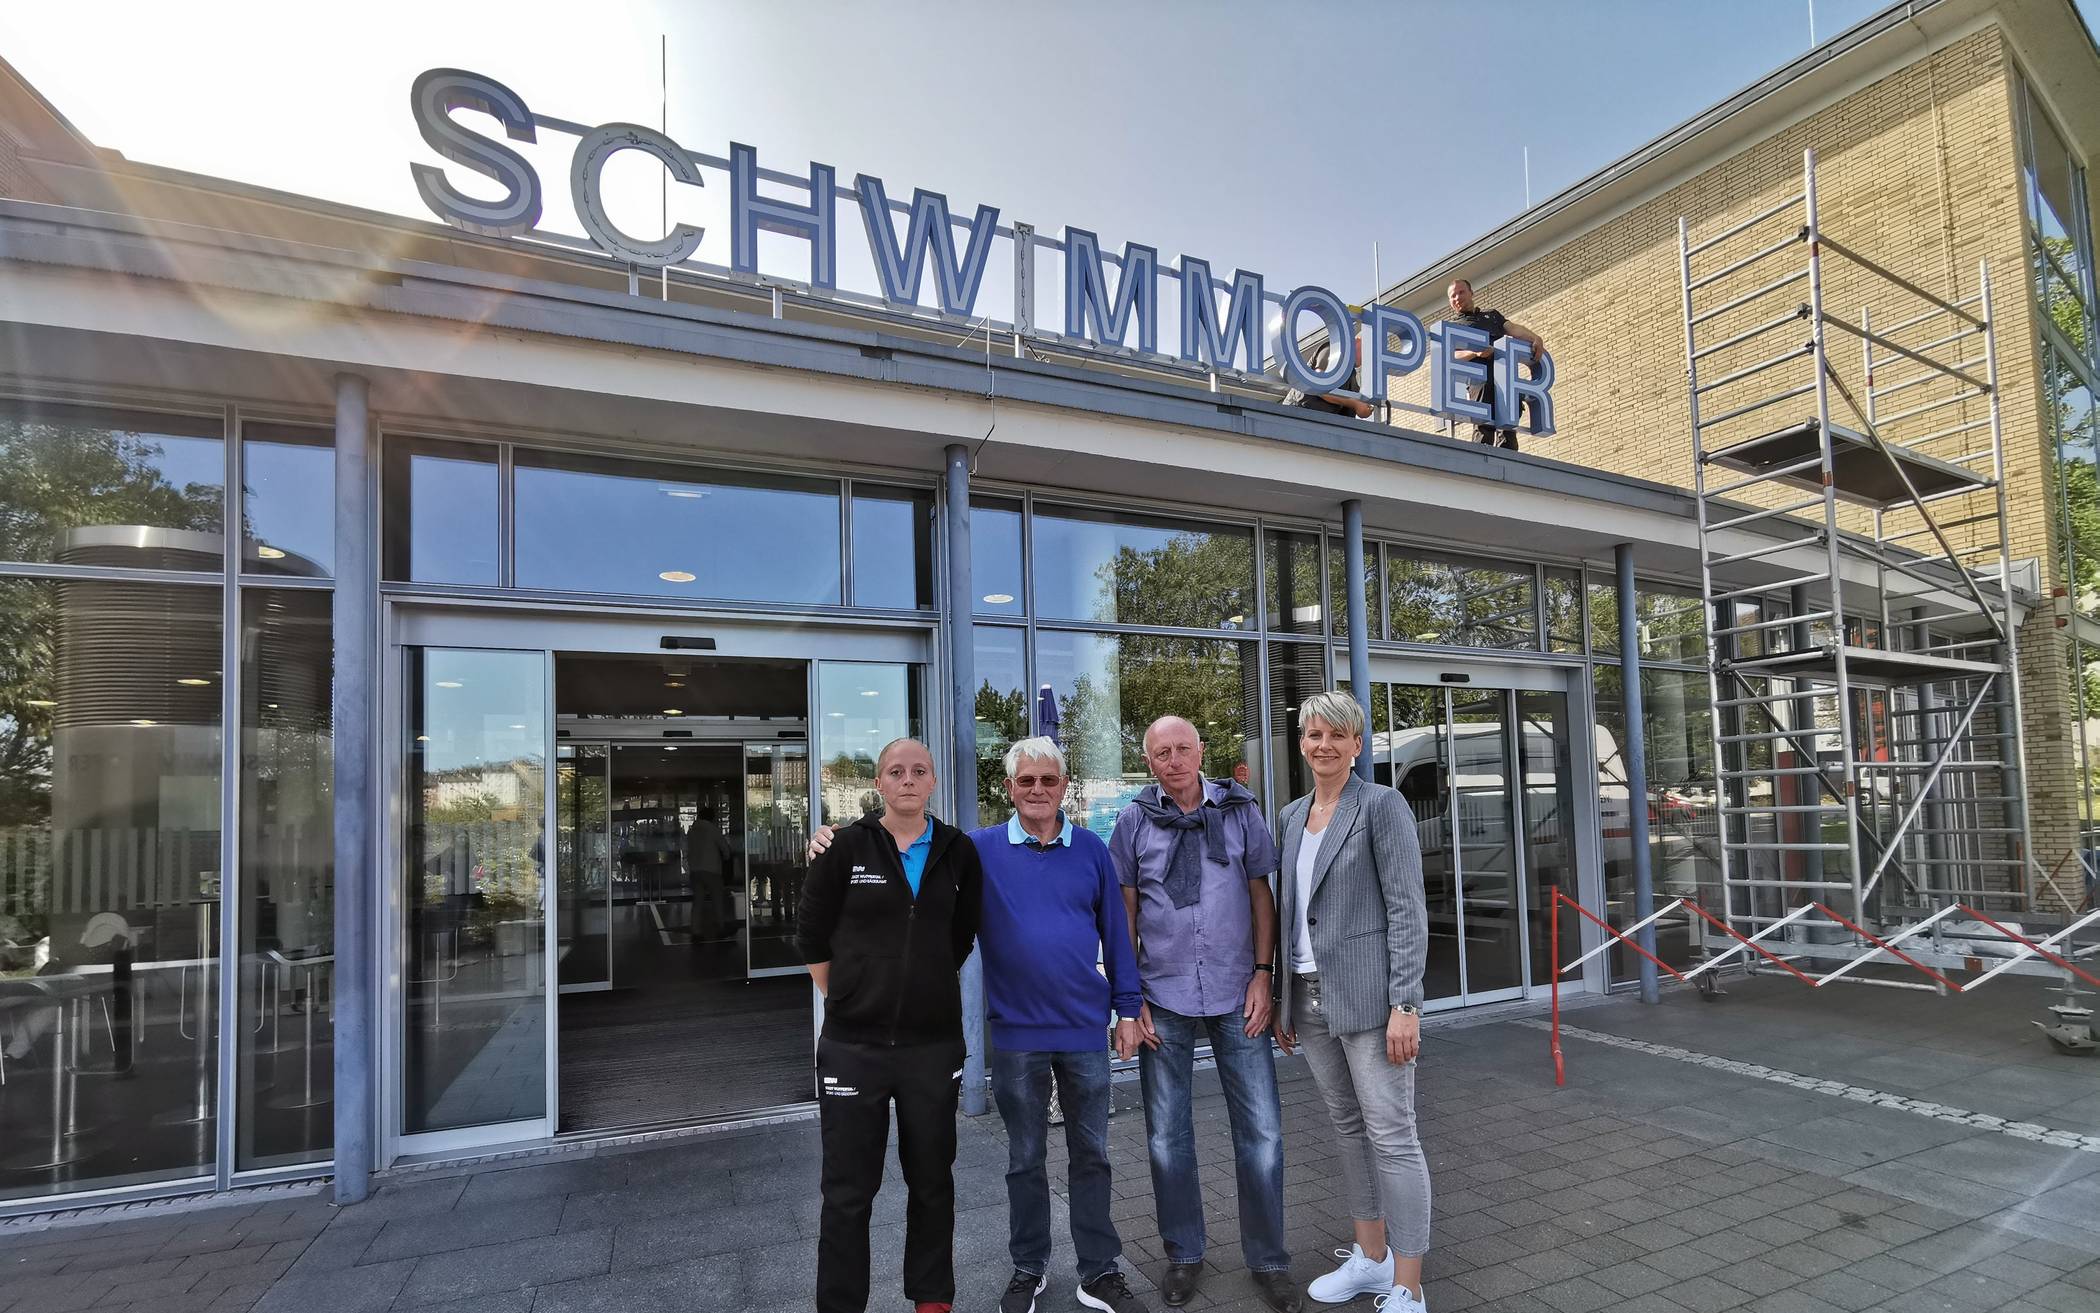  Annika Sander, Ingo Gehring vom Förderverein der Schwimmoper, Ralf Geisendörfer und Susanne Thiel vom Wuppertaler Gebäudemanagement.     